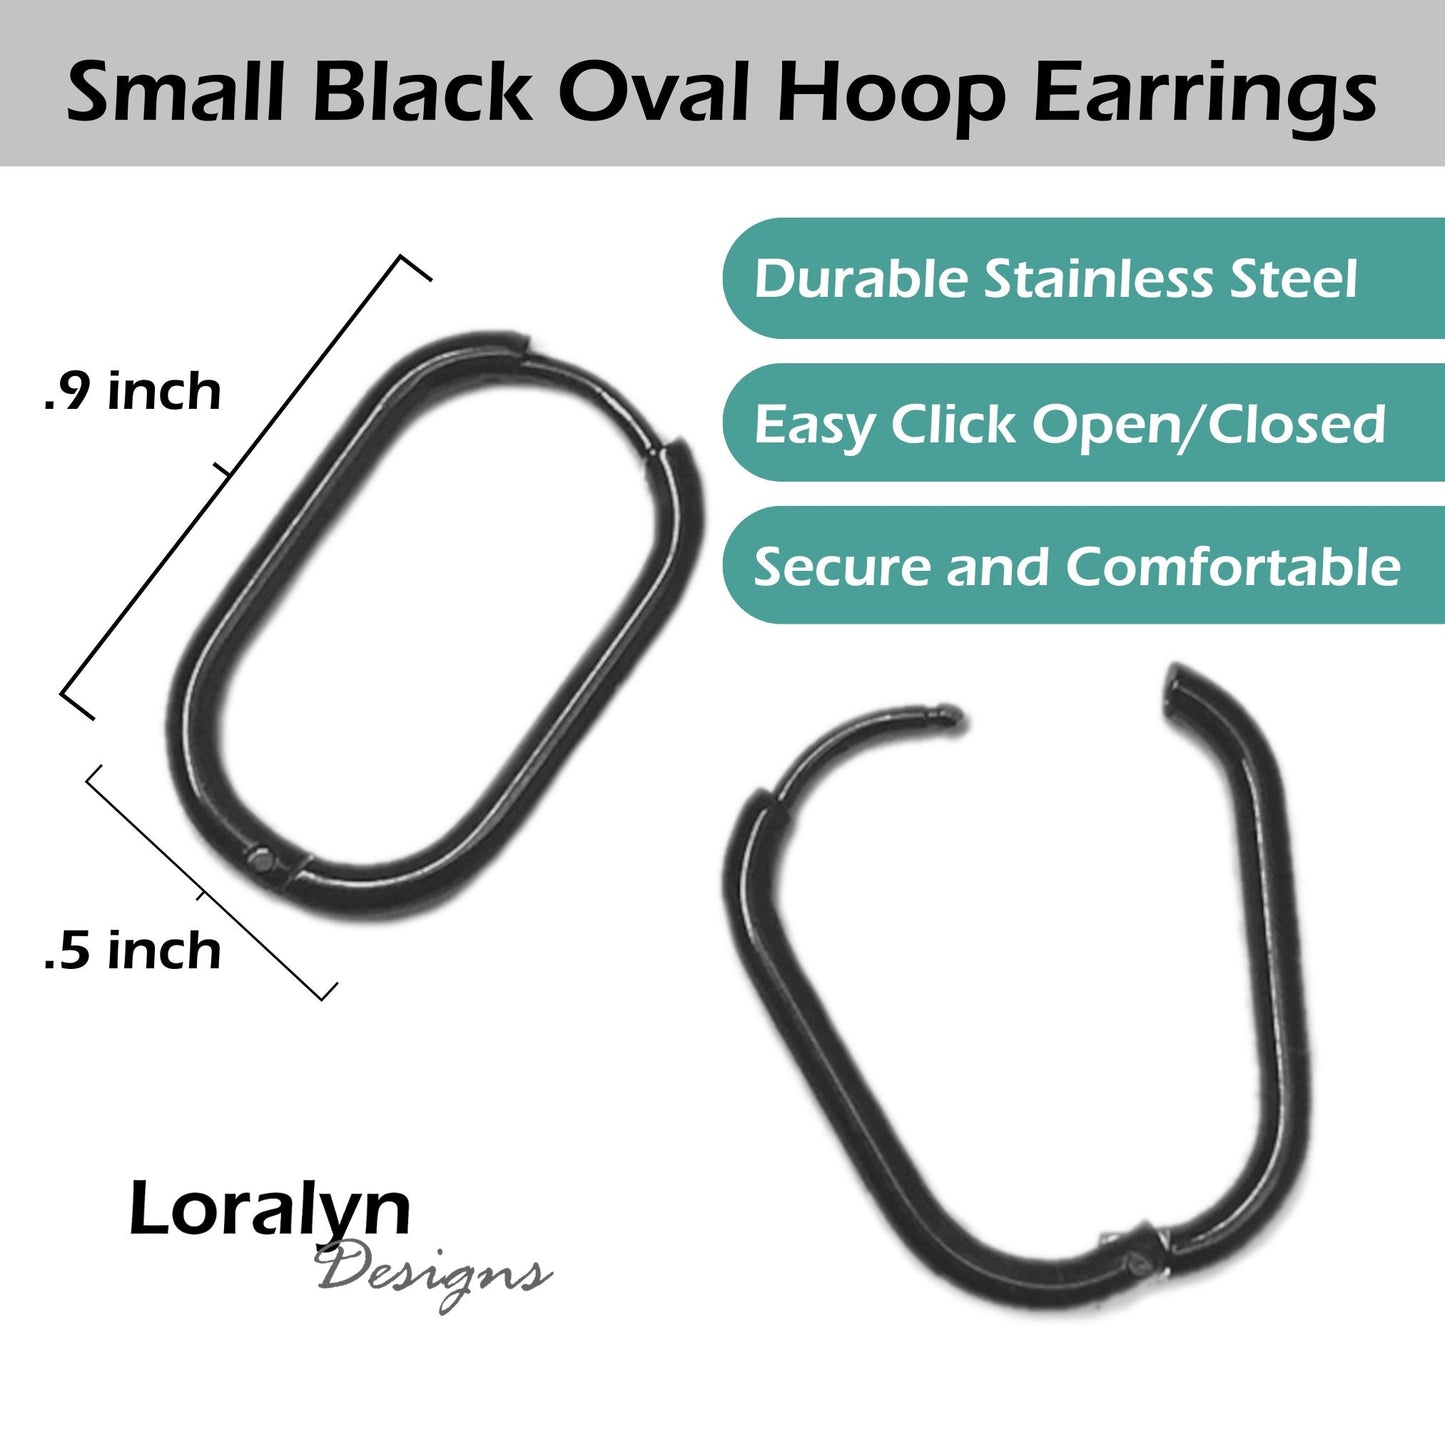 Small Oval Hinged Earrings, Stainless Steel Plain Small Hoops, Minimalist Silver Jewelry, Gender Neutral Hoops, Rectangular Hoop Earrings